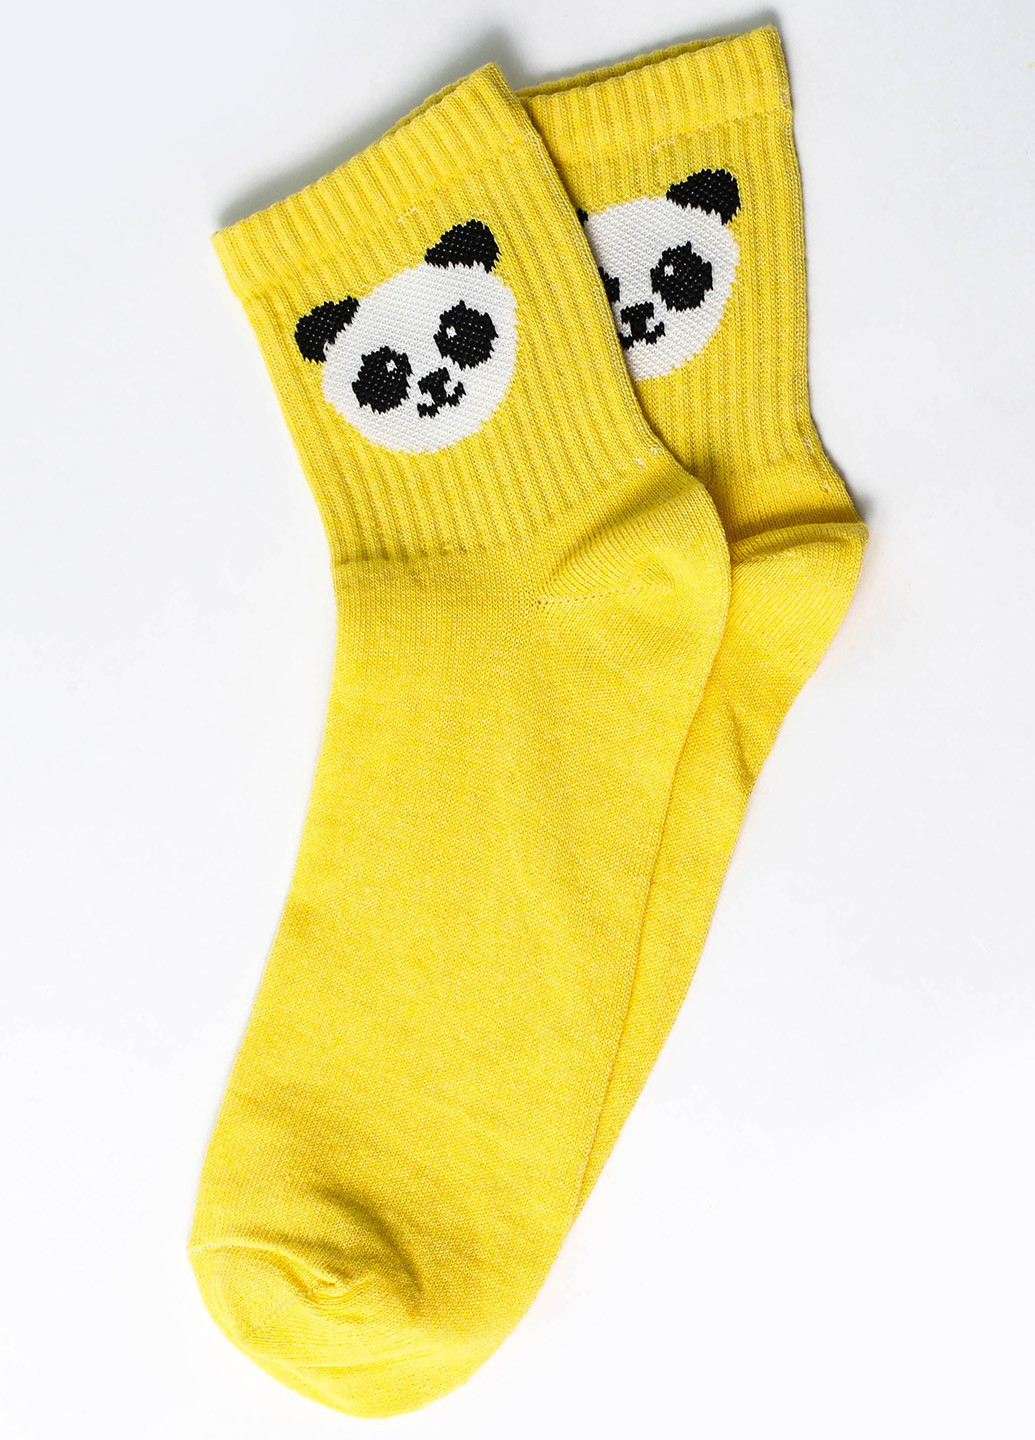 Шкарпетки Панда жовтий Rock'n'socks жовті повсякденні